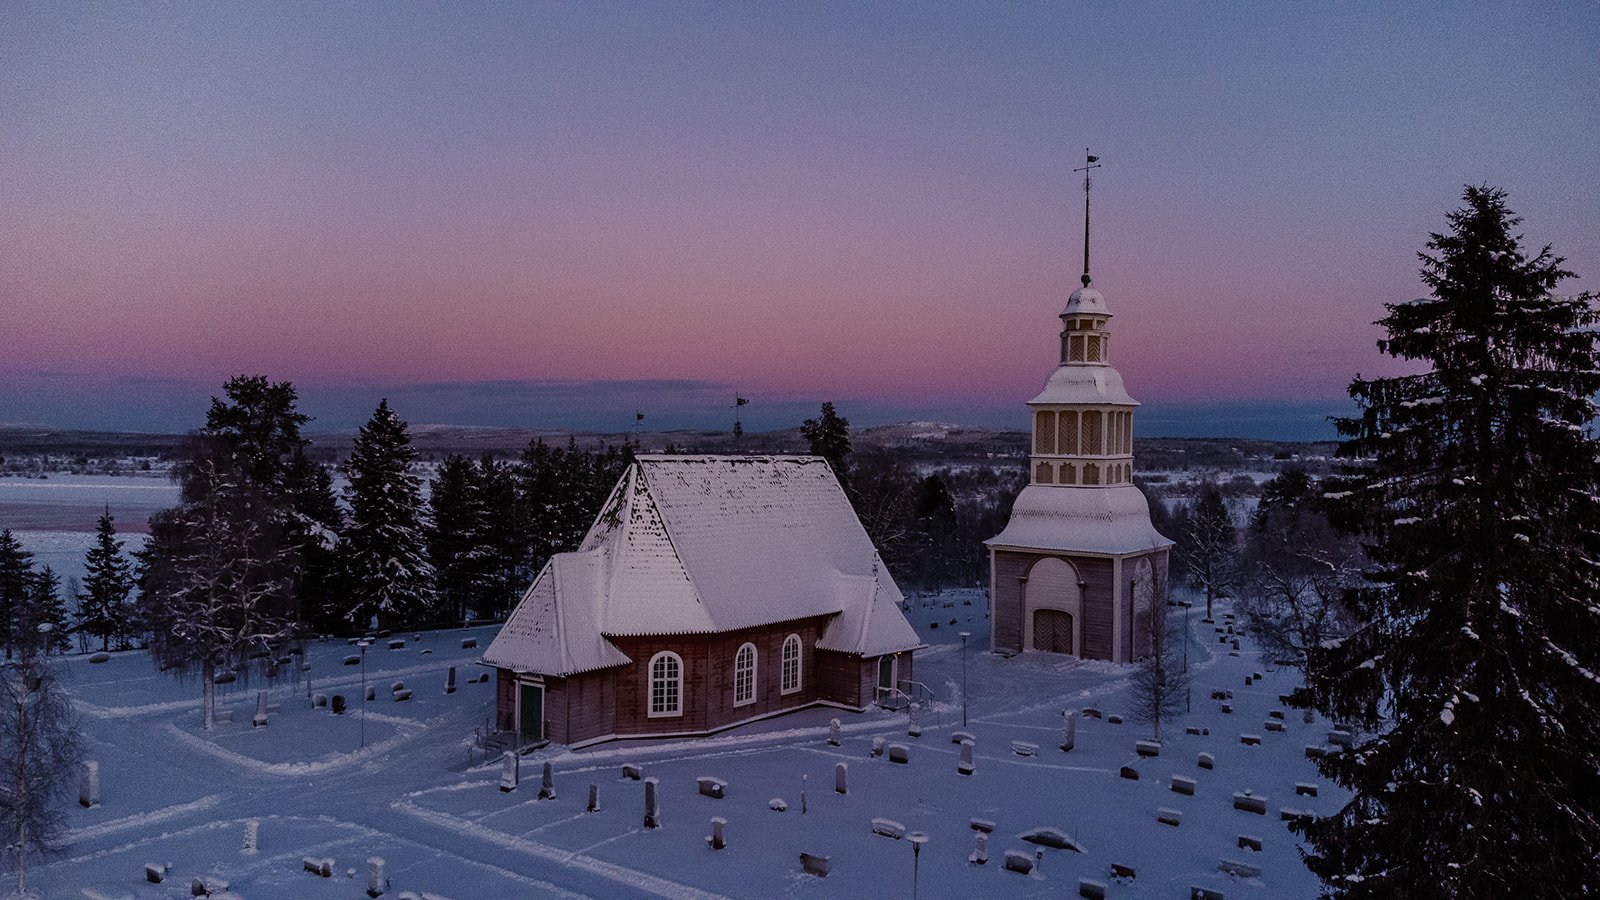 träkyrka i svenska lappland belägen i ett vinterlandskap med blå och rosa himmel.